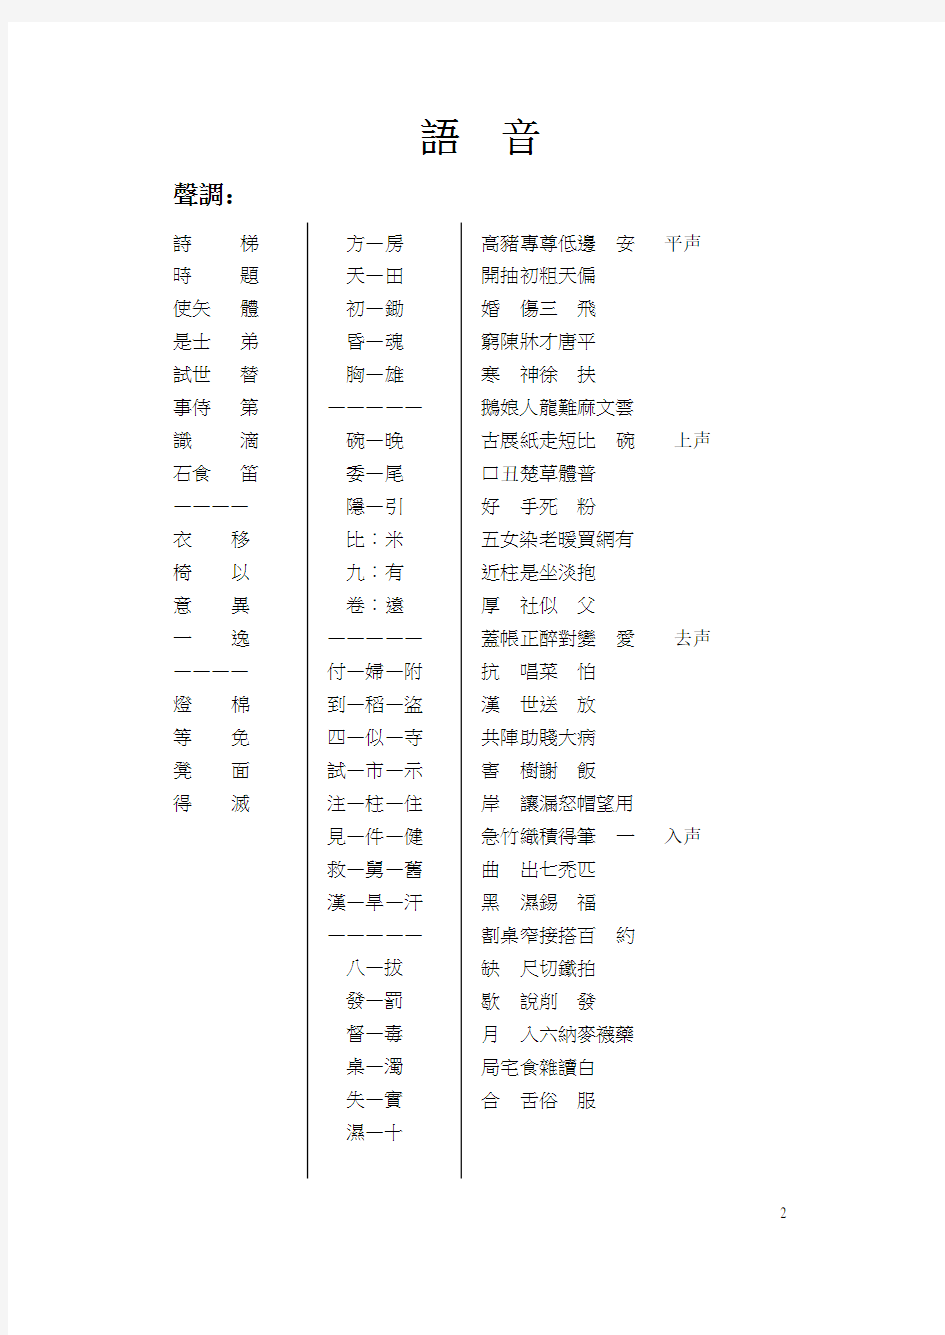 汉语方言词语调查条目表